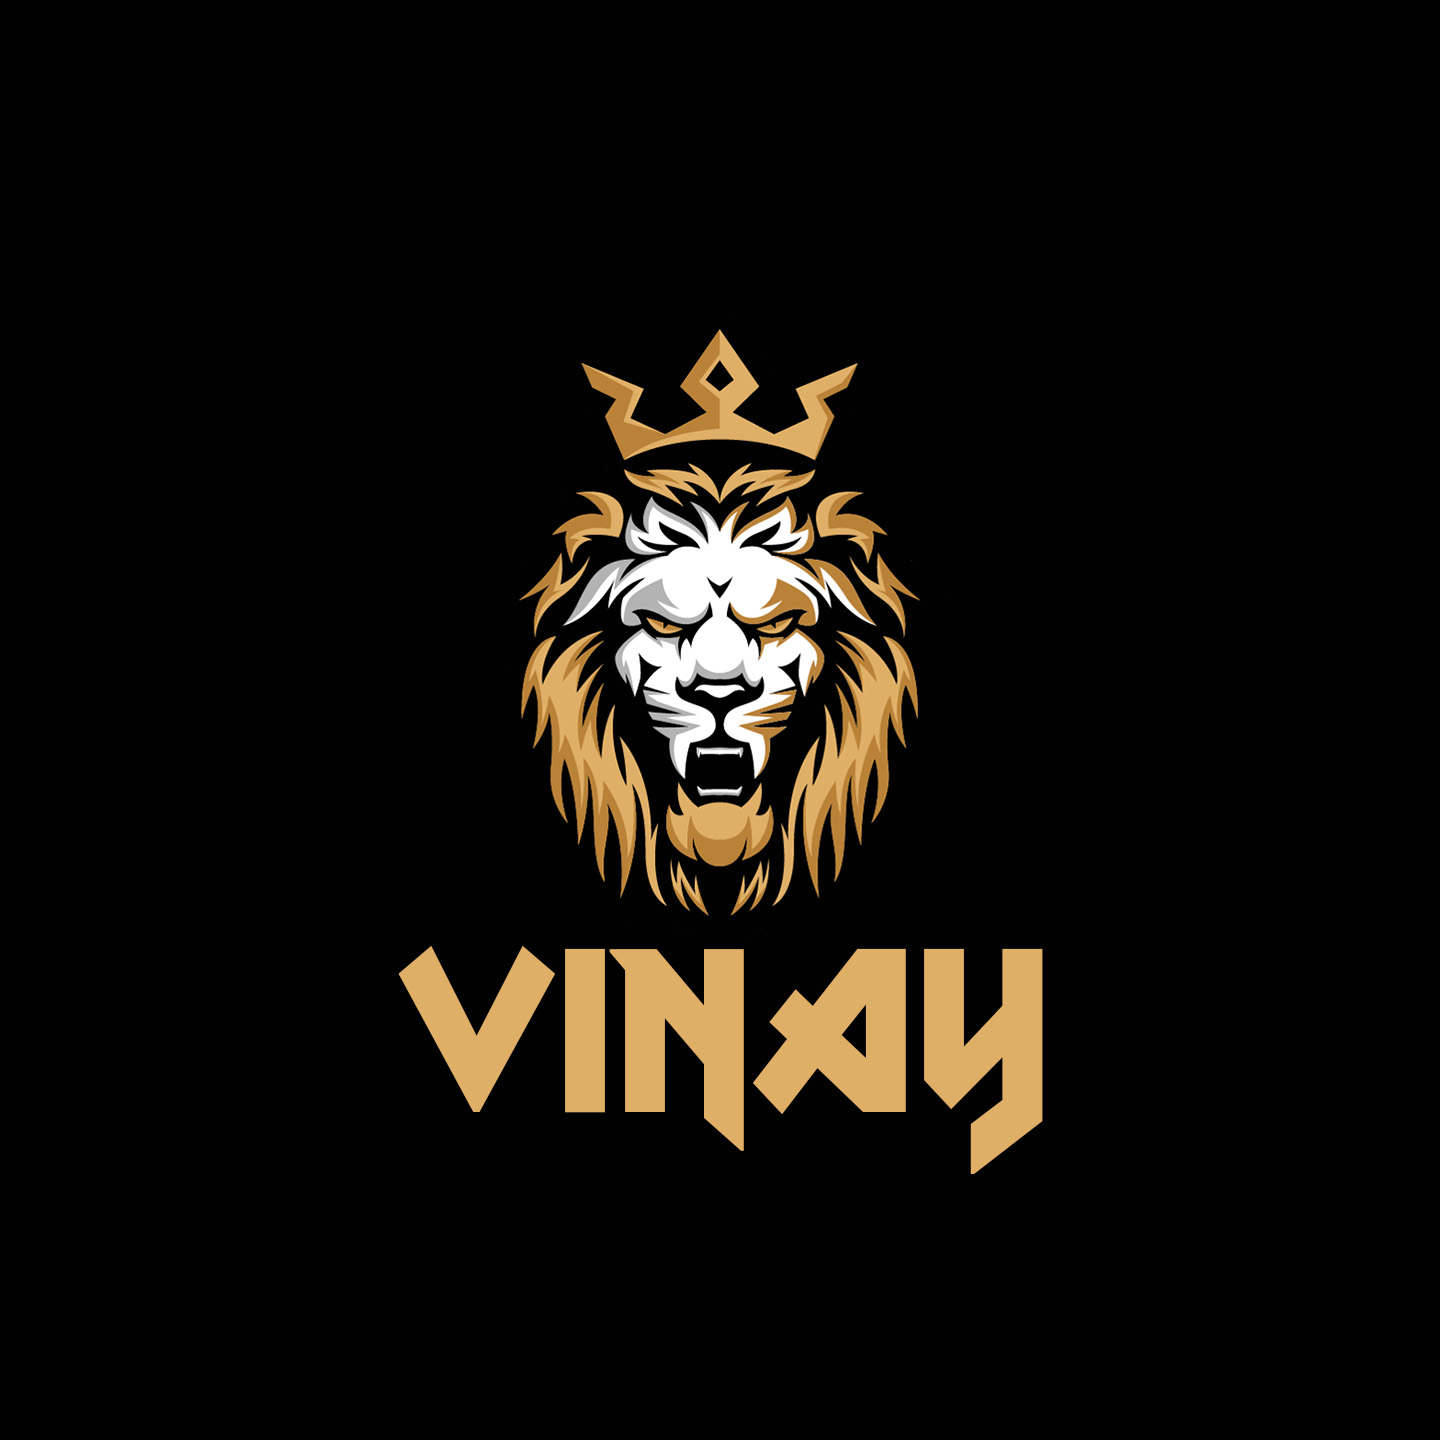 Vincy Logo by BerrielBrands® on Dribbble